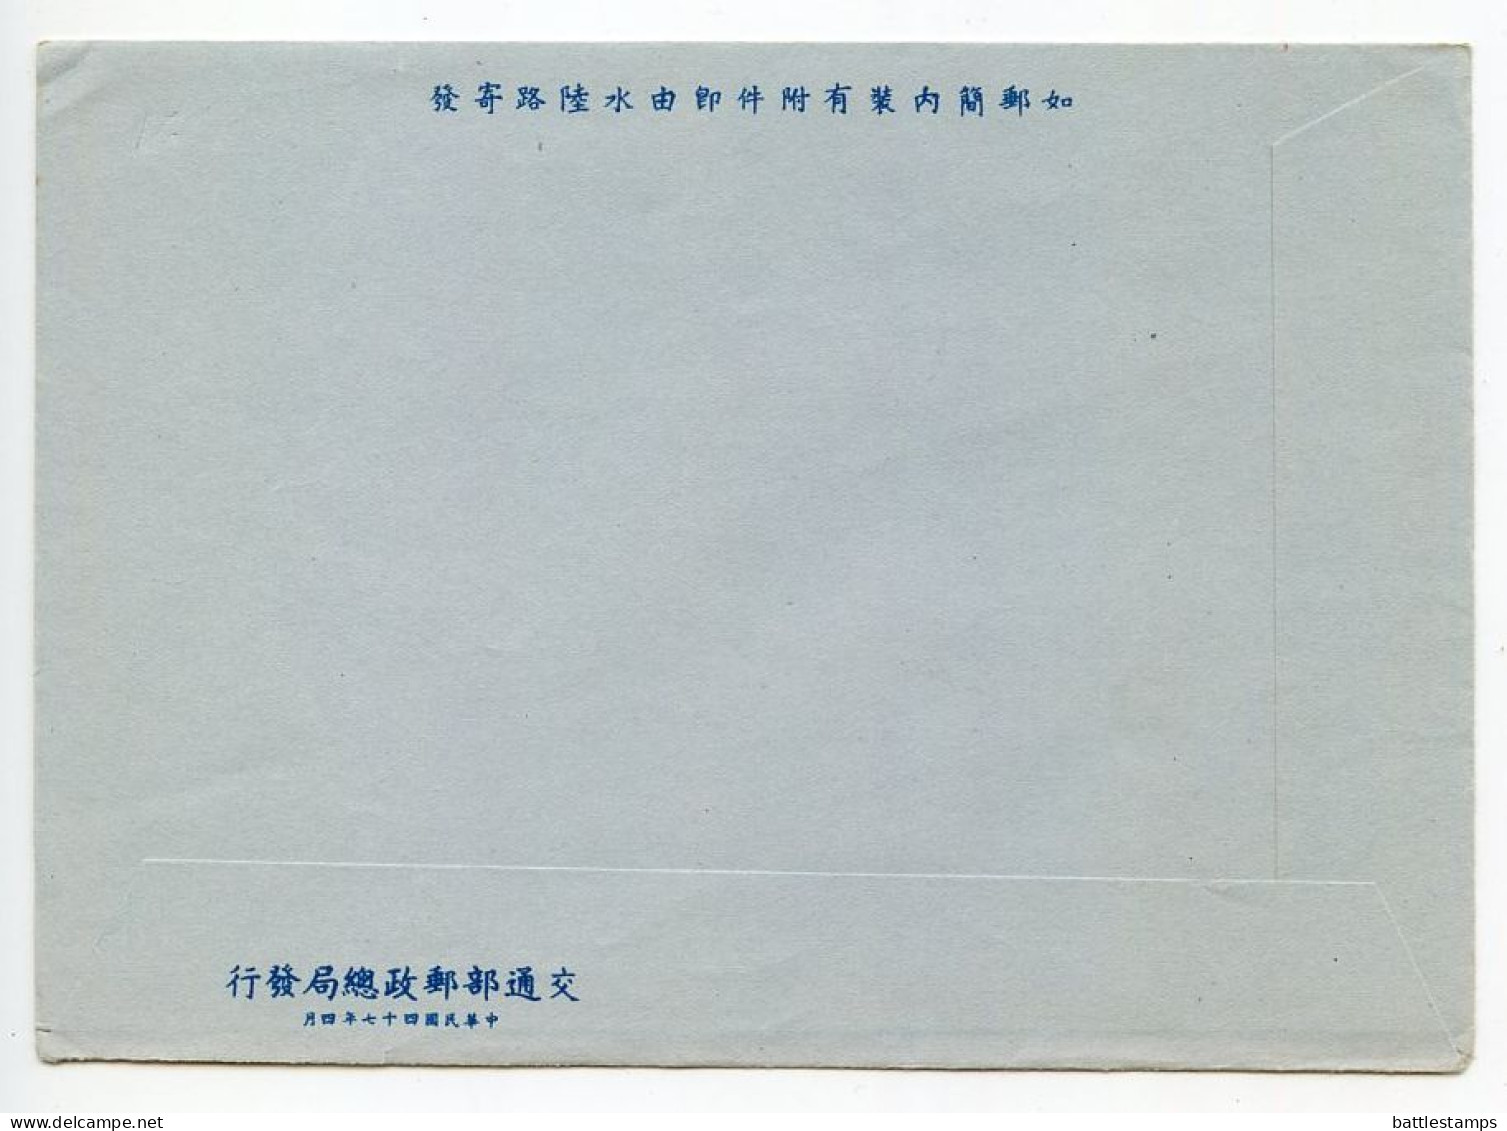 Taiwan / Republic Of China 1950's Mint Aerogramme - $1.50 Airplane - Postal Stationery